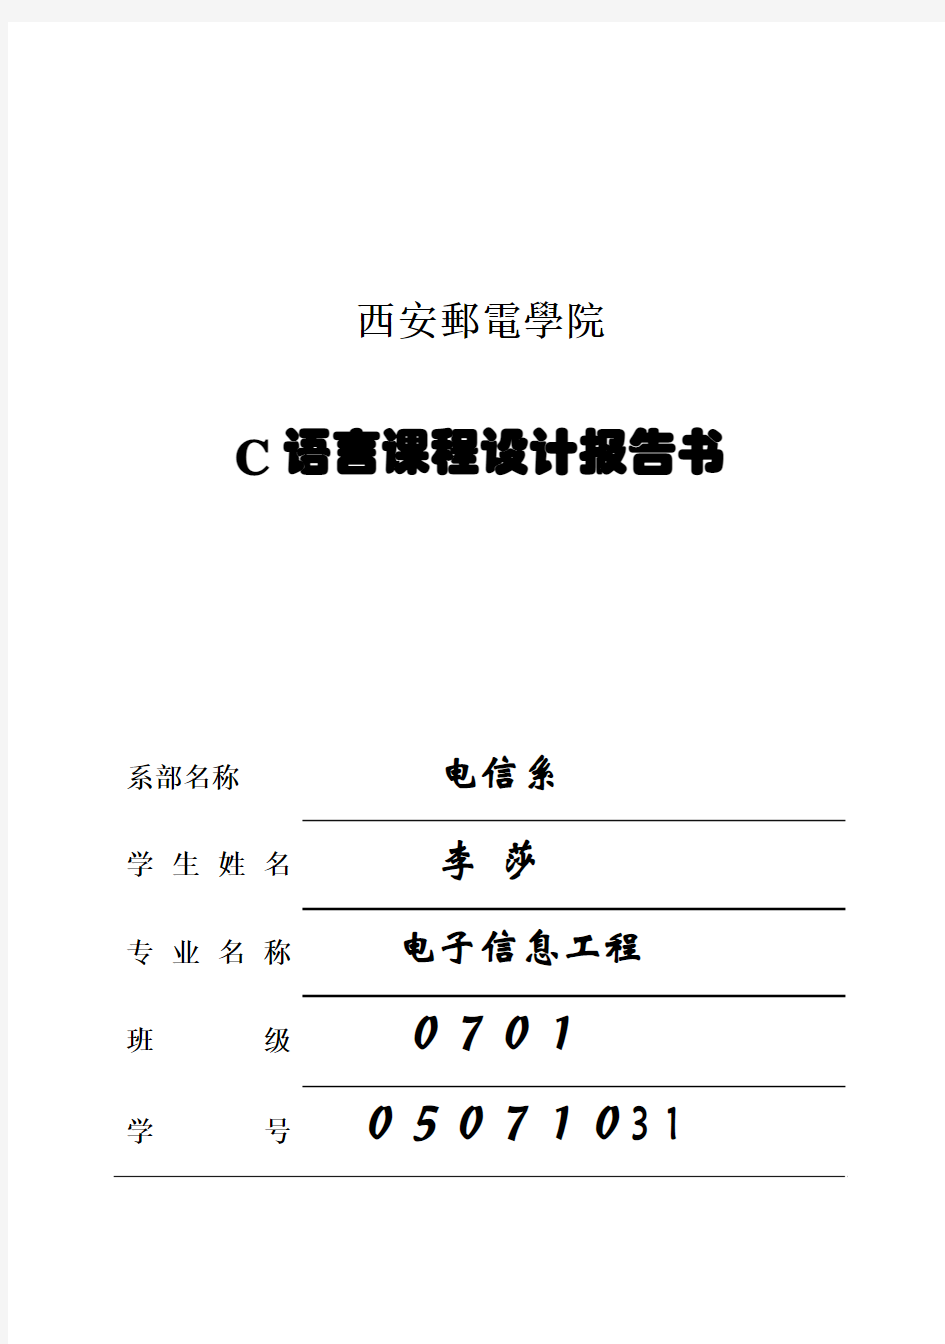 (完整版)C语言课程设计报告书——李莎